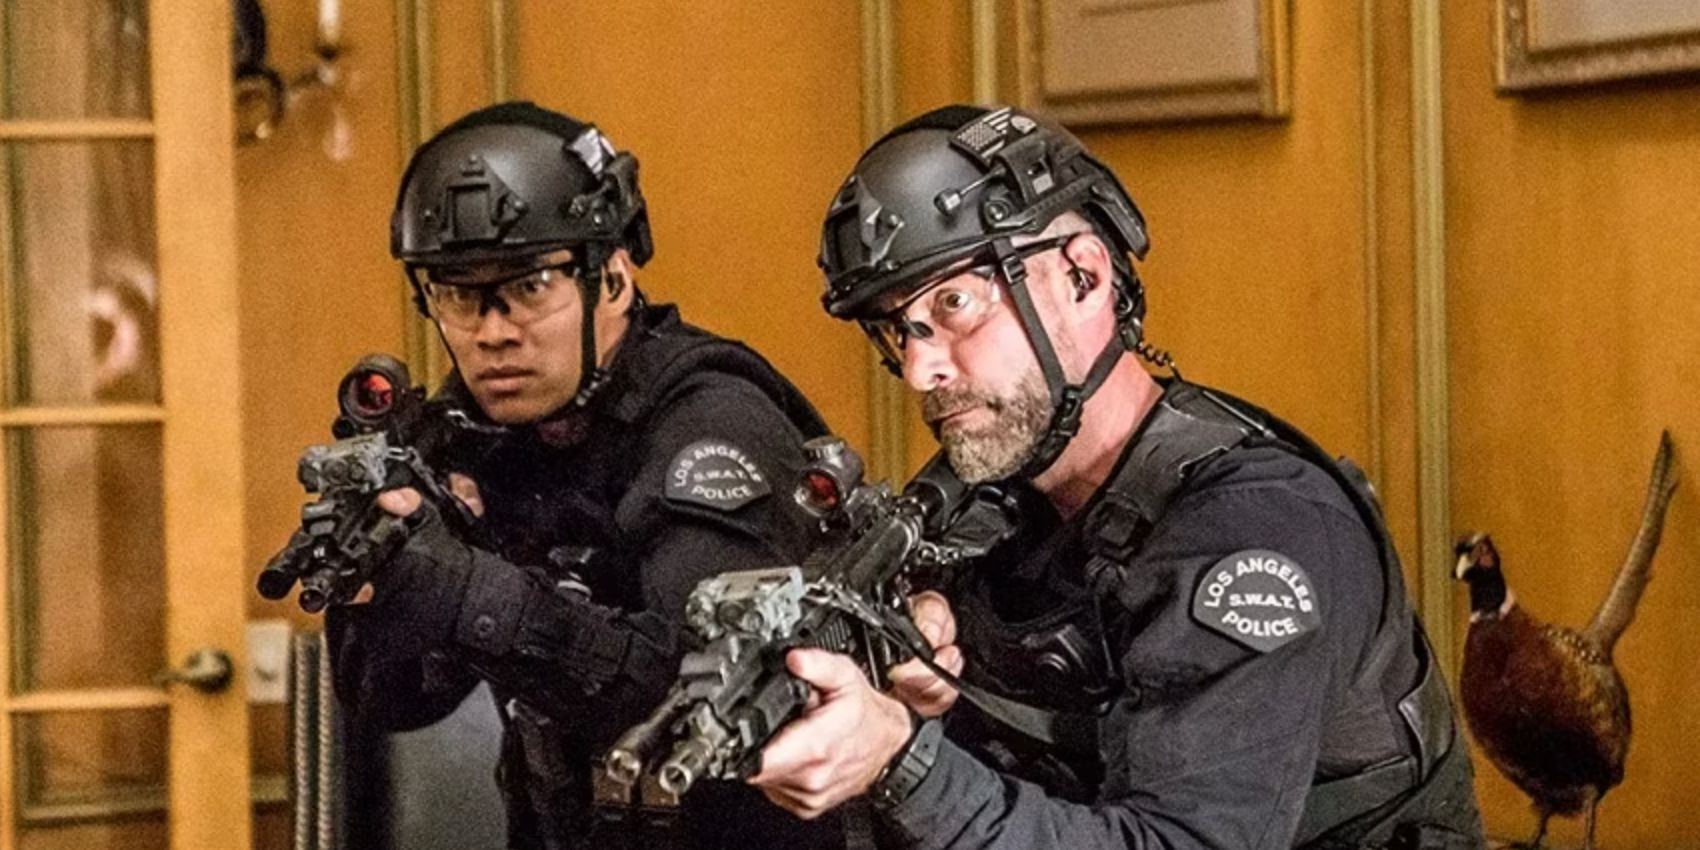 Tan e Deacon uniformizados e com armas em punho dentro de uma casa no episódio da SWAT Invisível